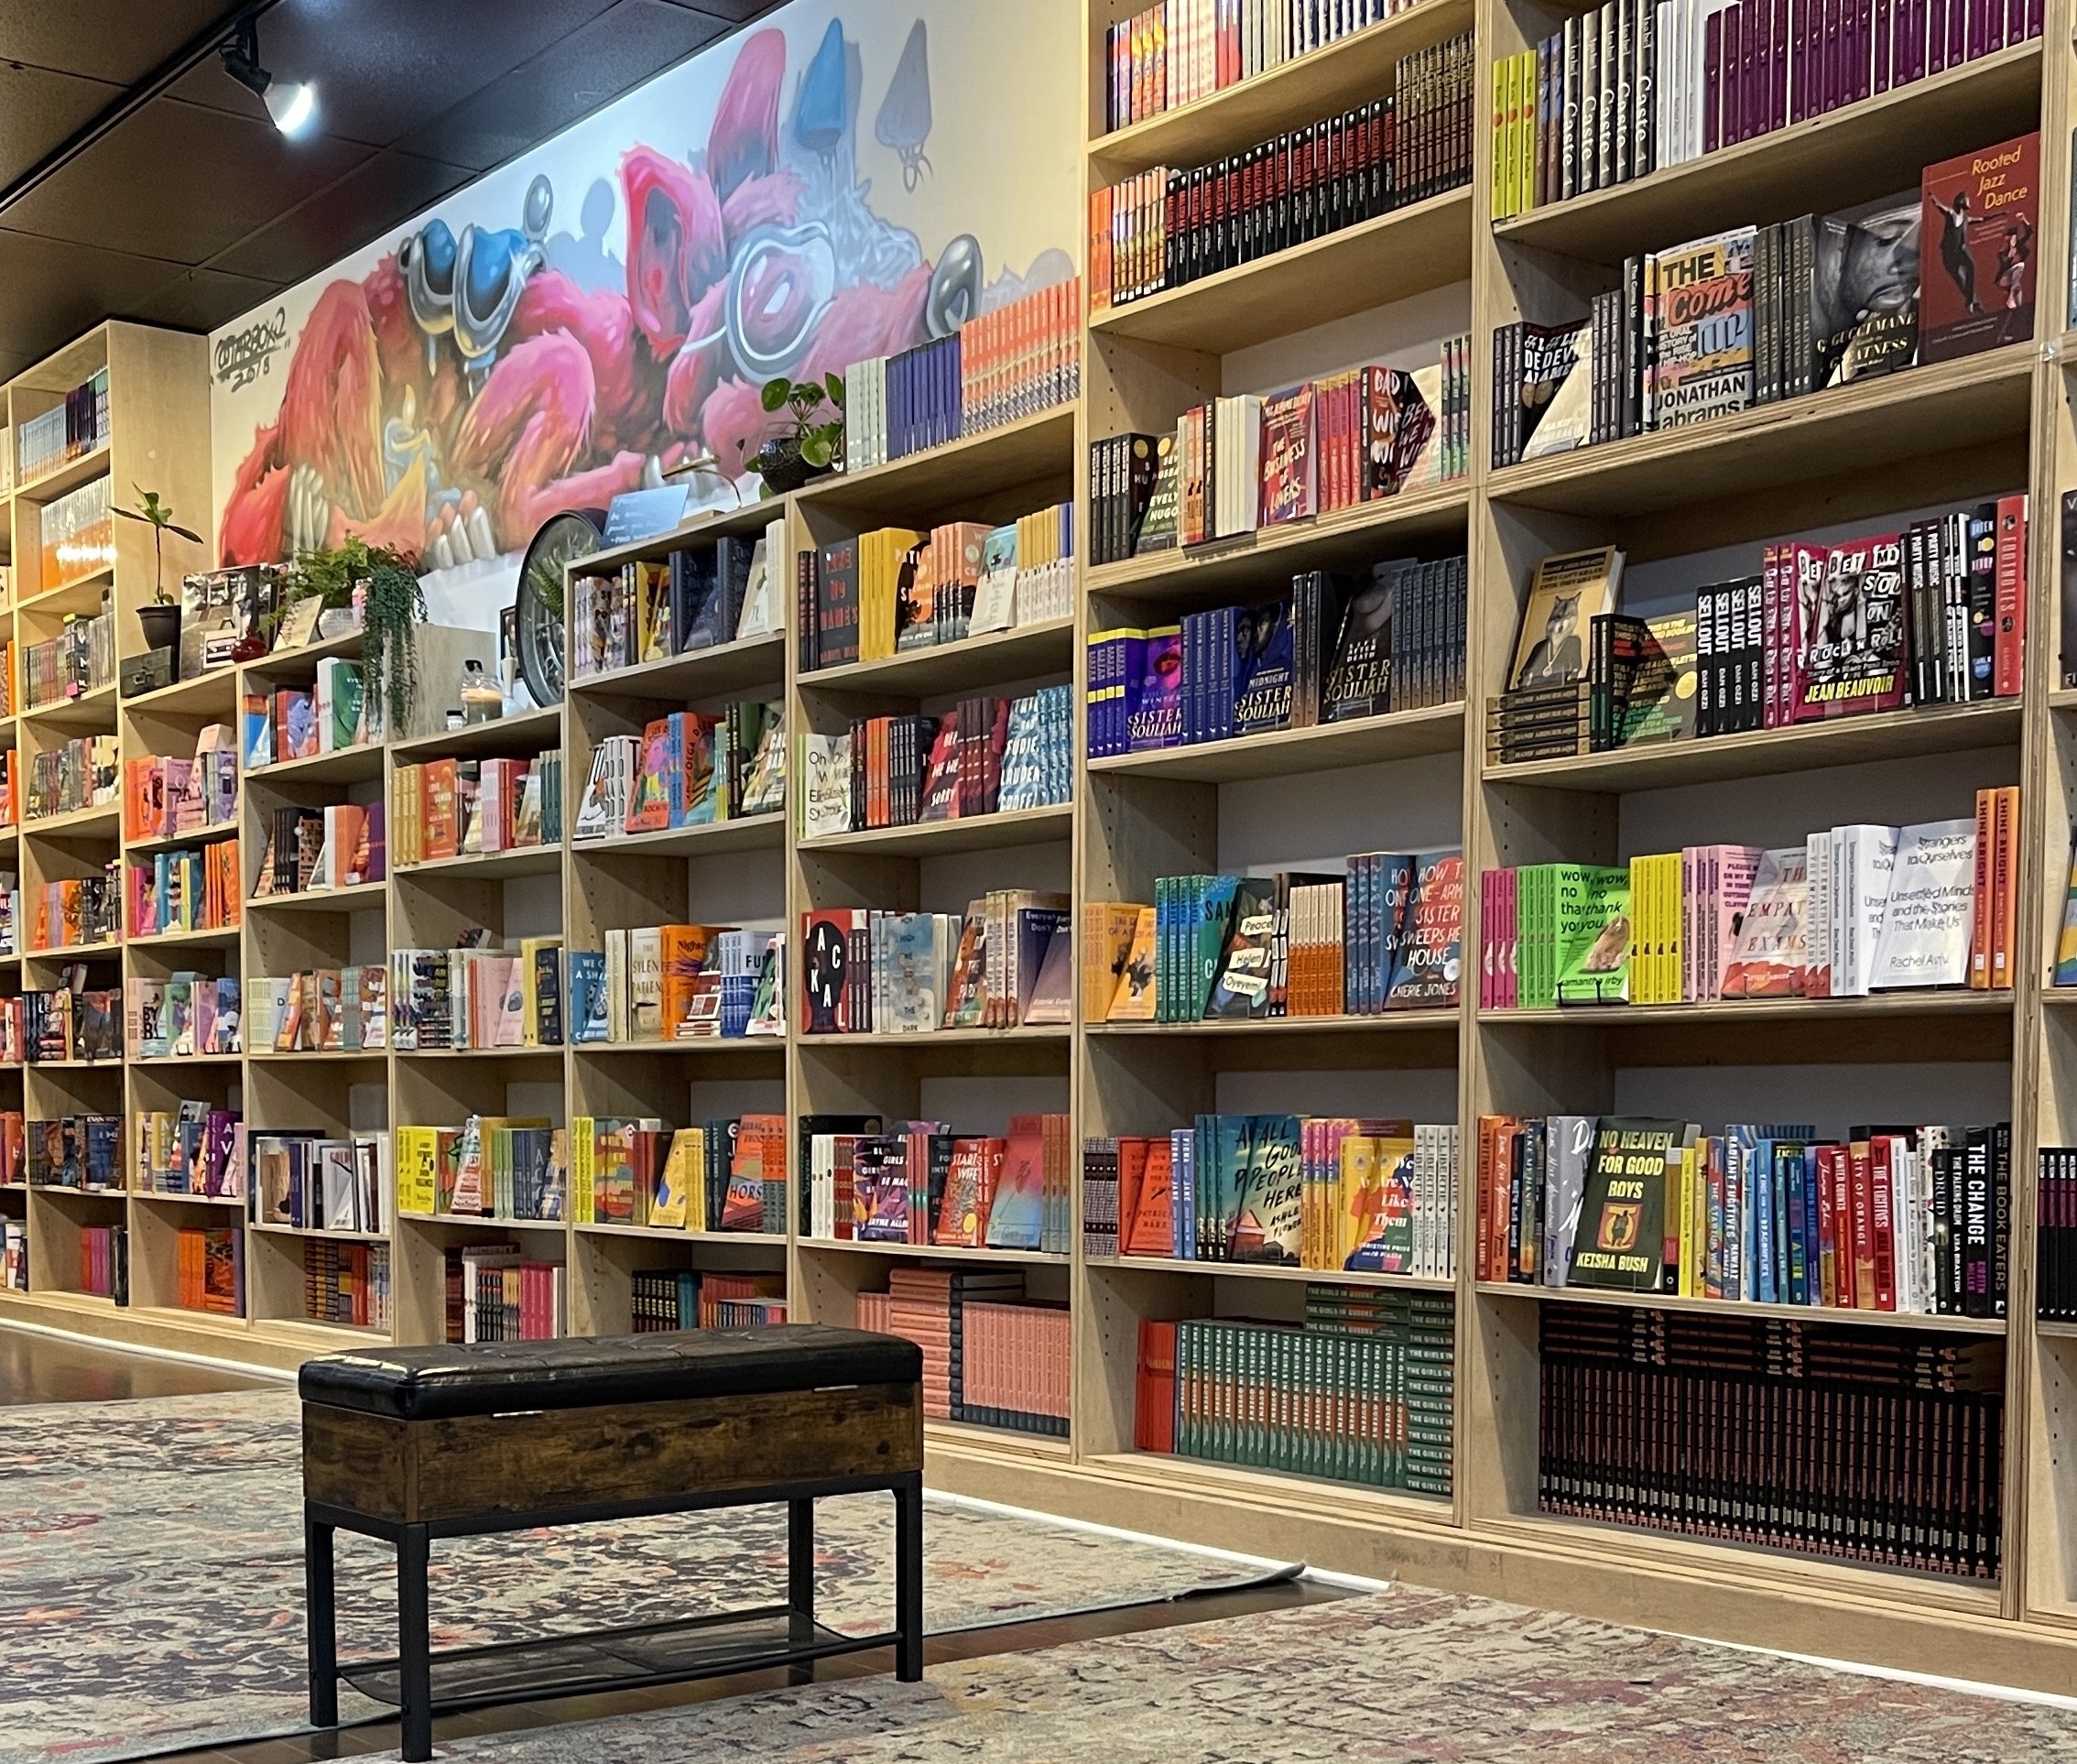 Semicolon Bookstore | Shopping in Wicker Park, Chicago